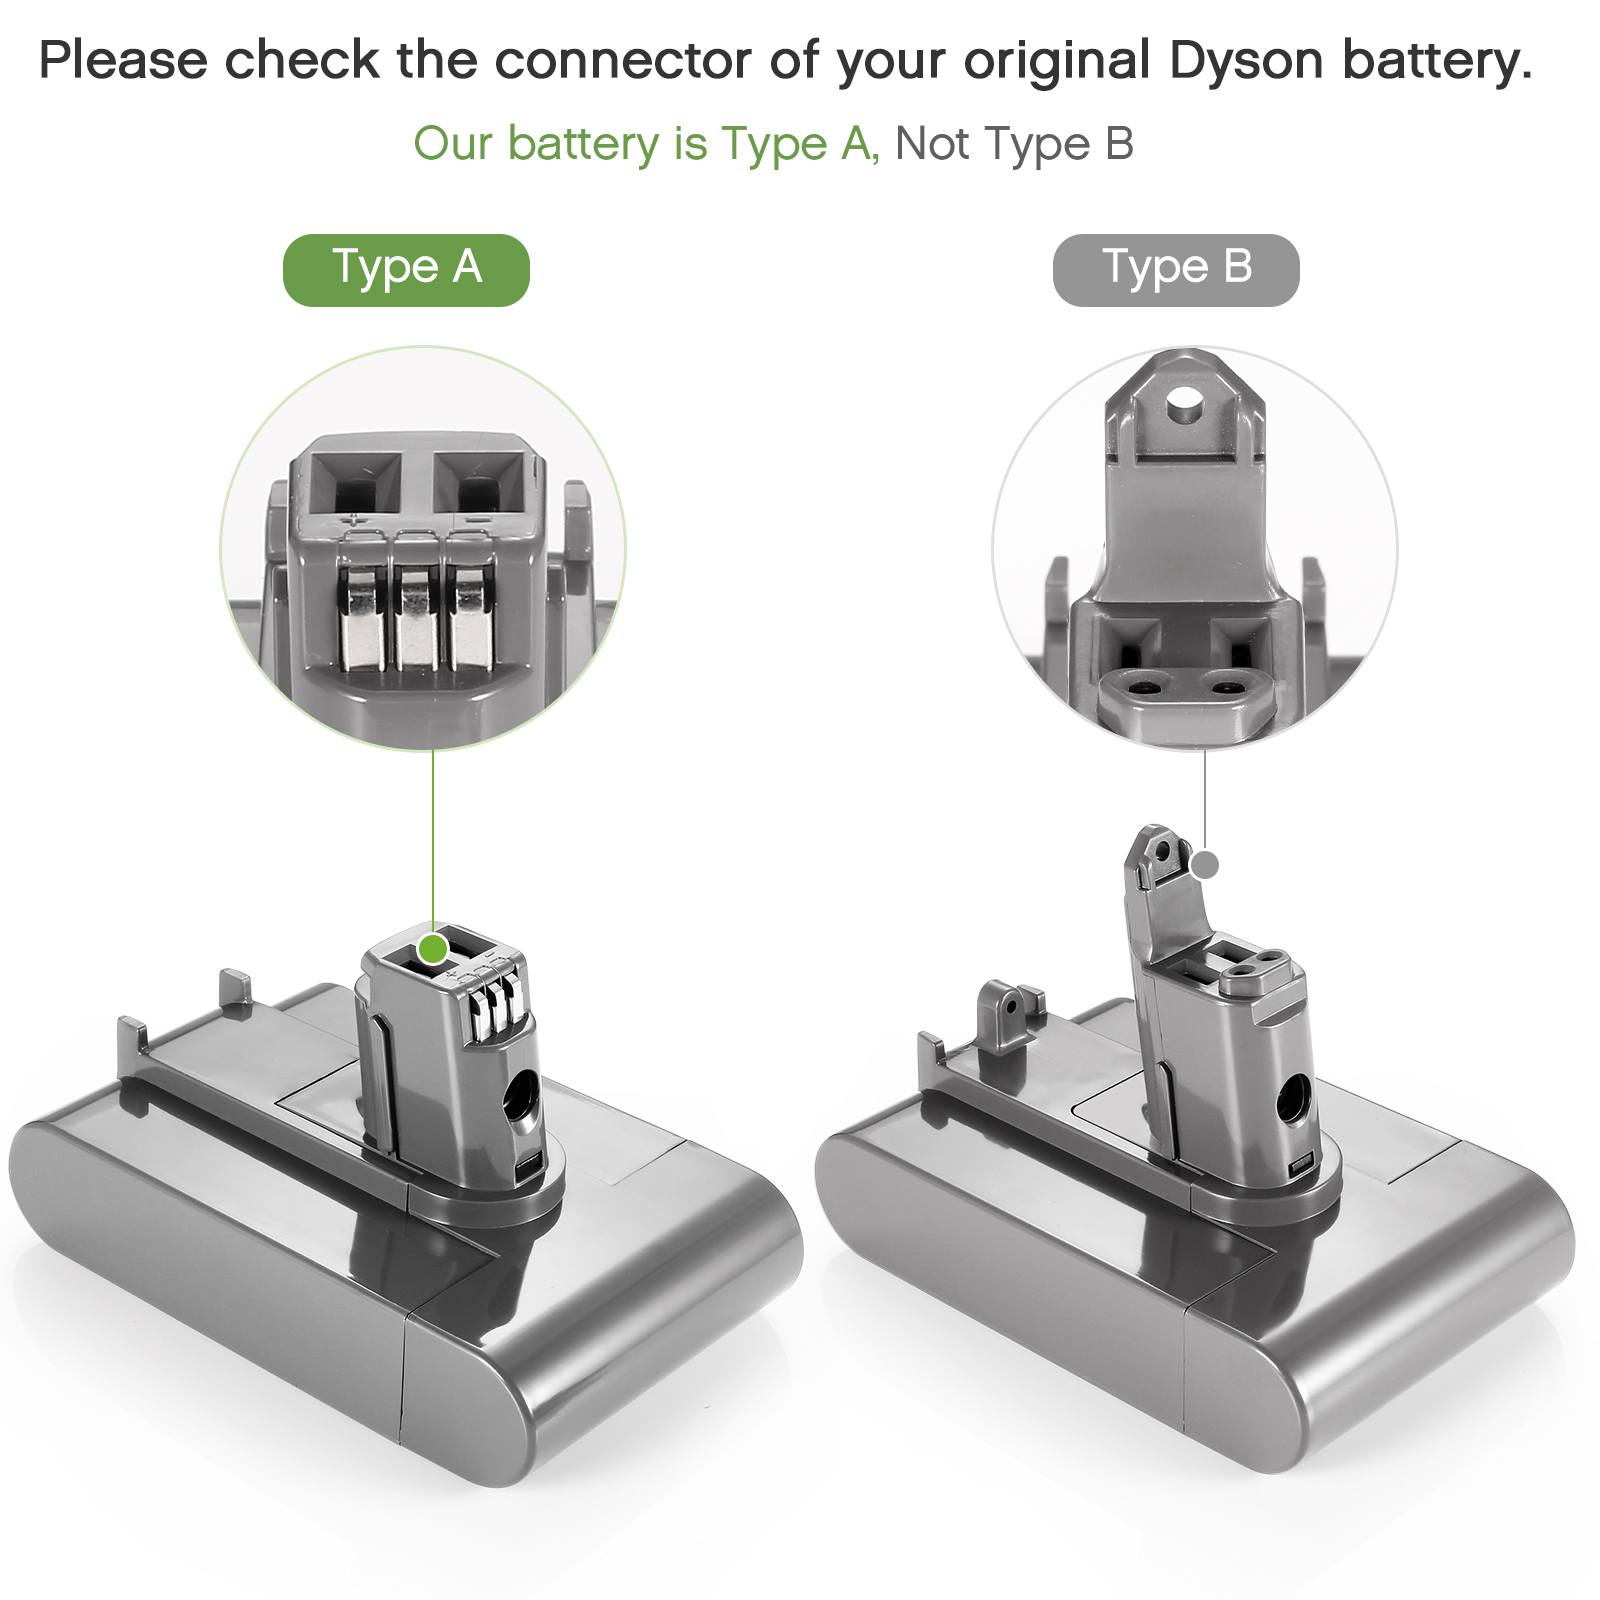 Adaptateur de batterie 31A pour Dyson Type A DC31 DC35 DC34 Aspirateur, adaptateur converti pour la batterie au lithium 20V